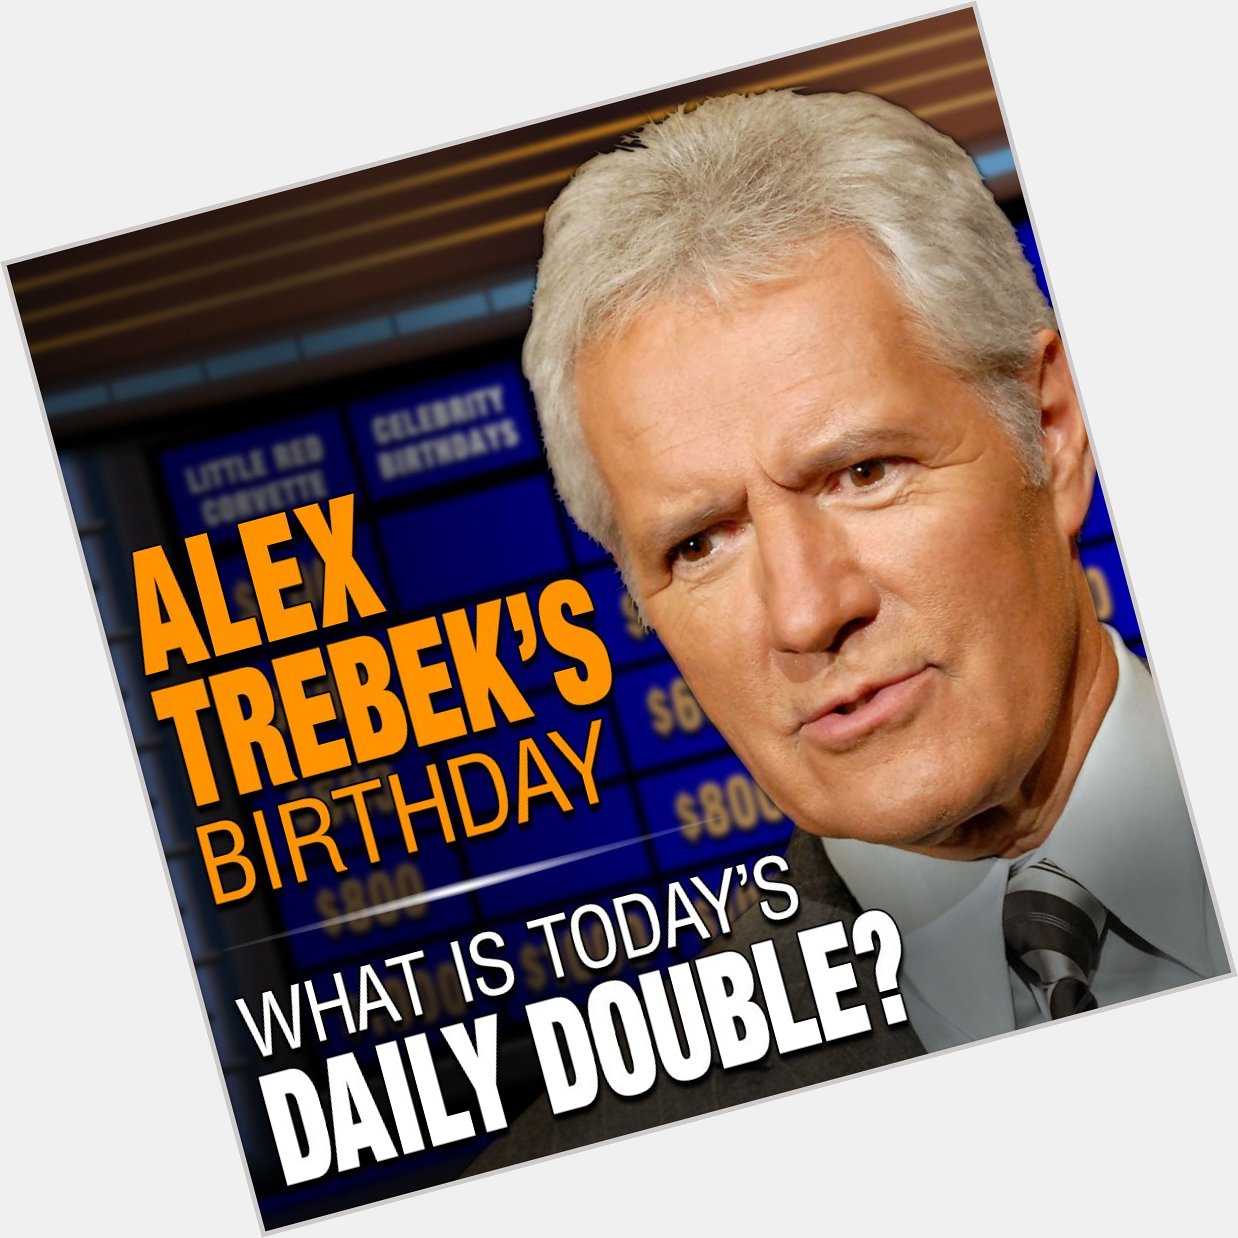 Happy birthday Alex Trebek! 